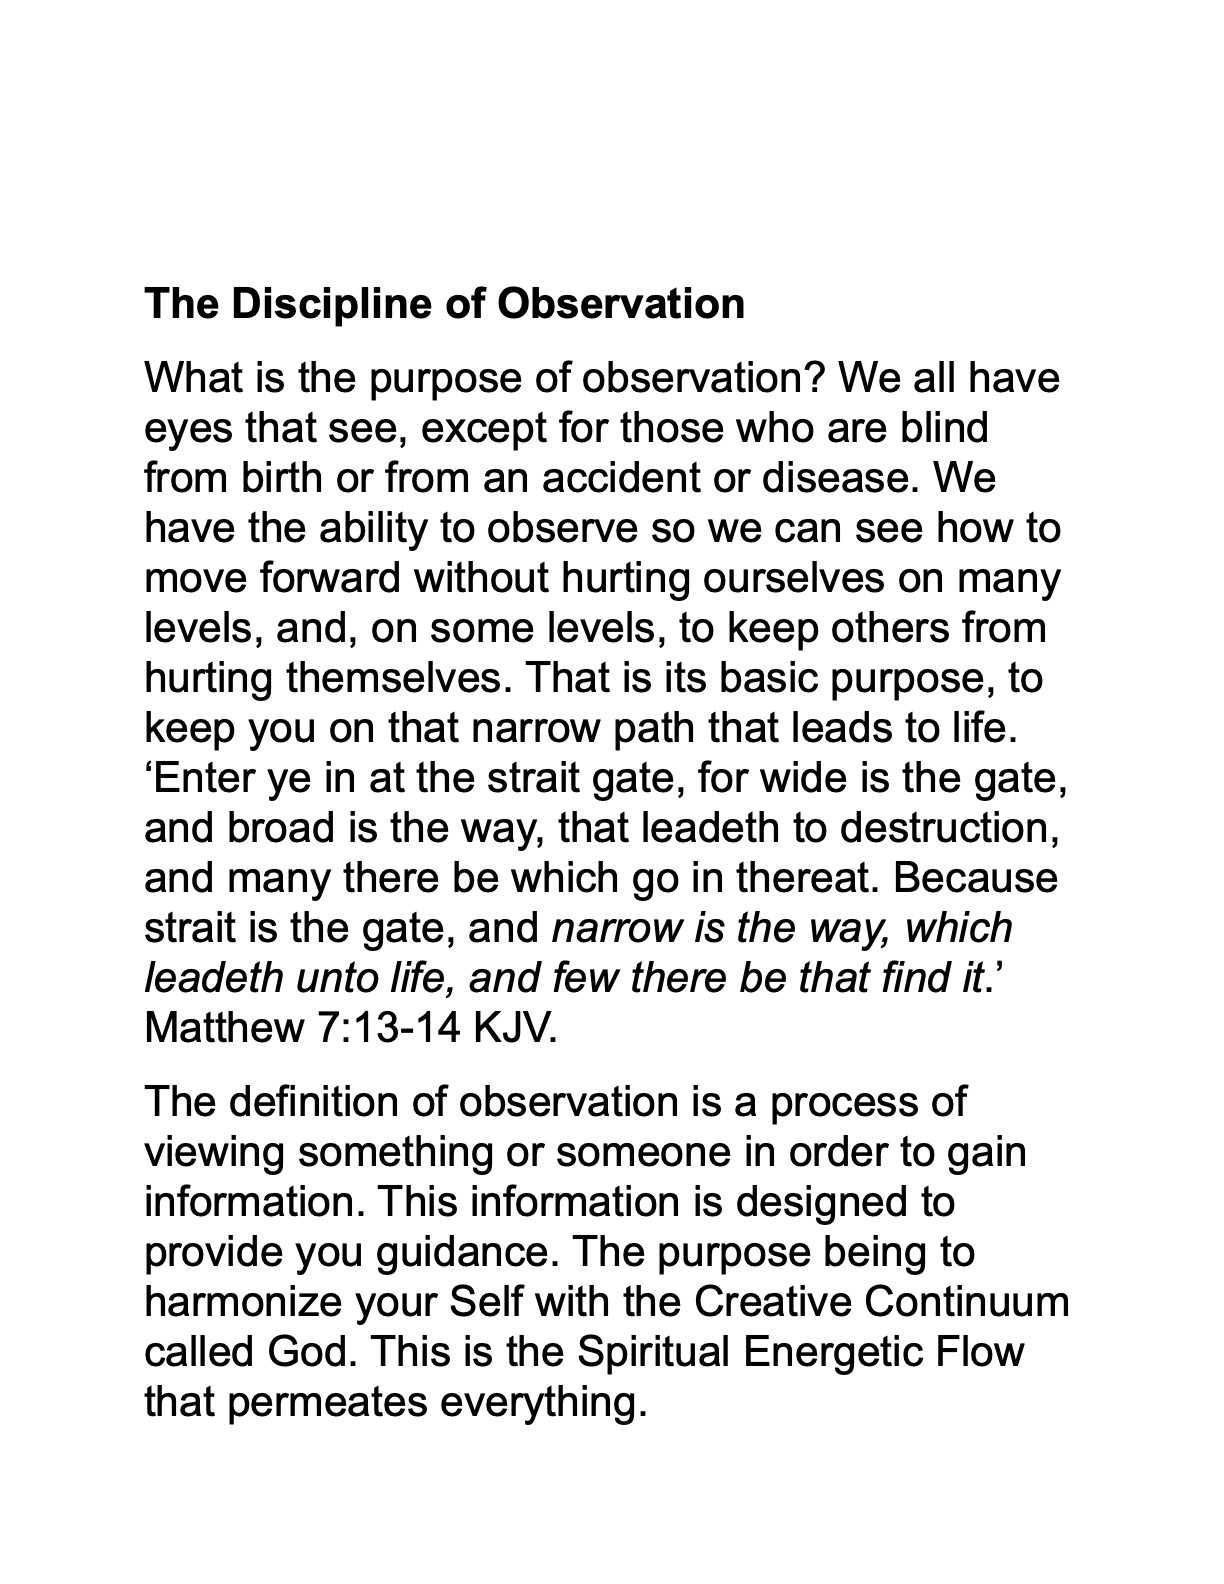 Discipline of Observation